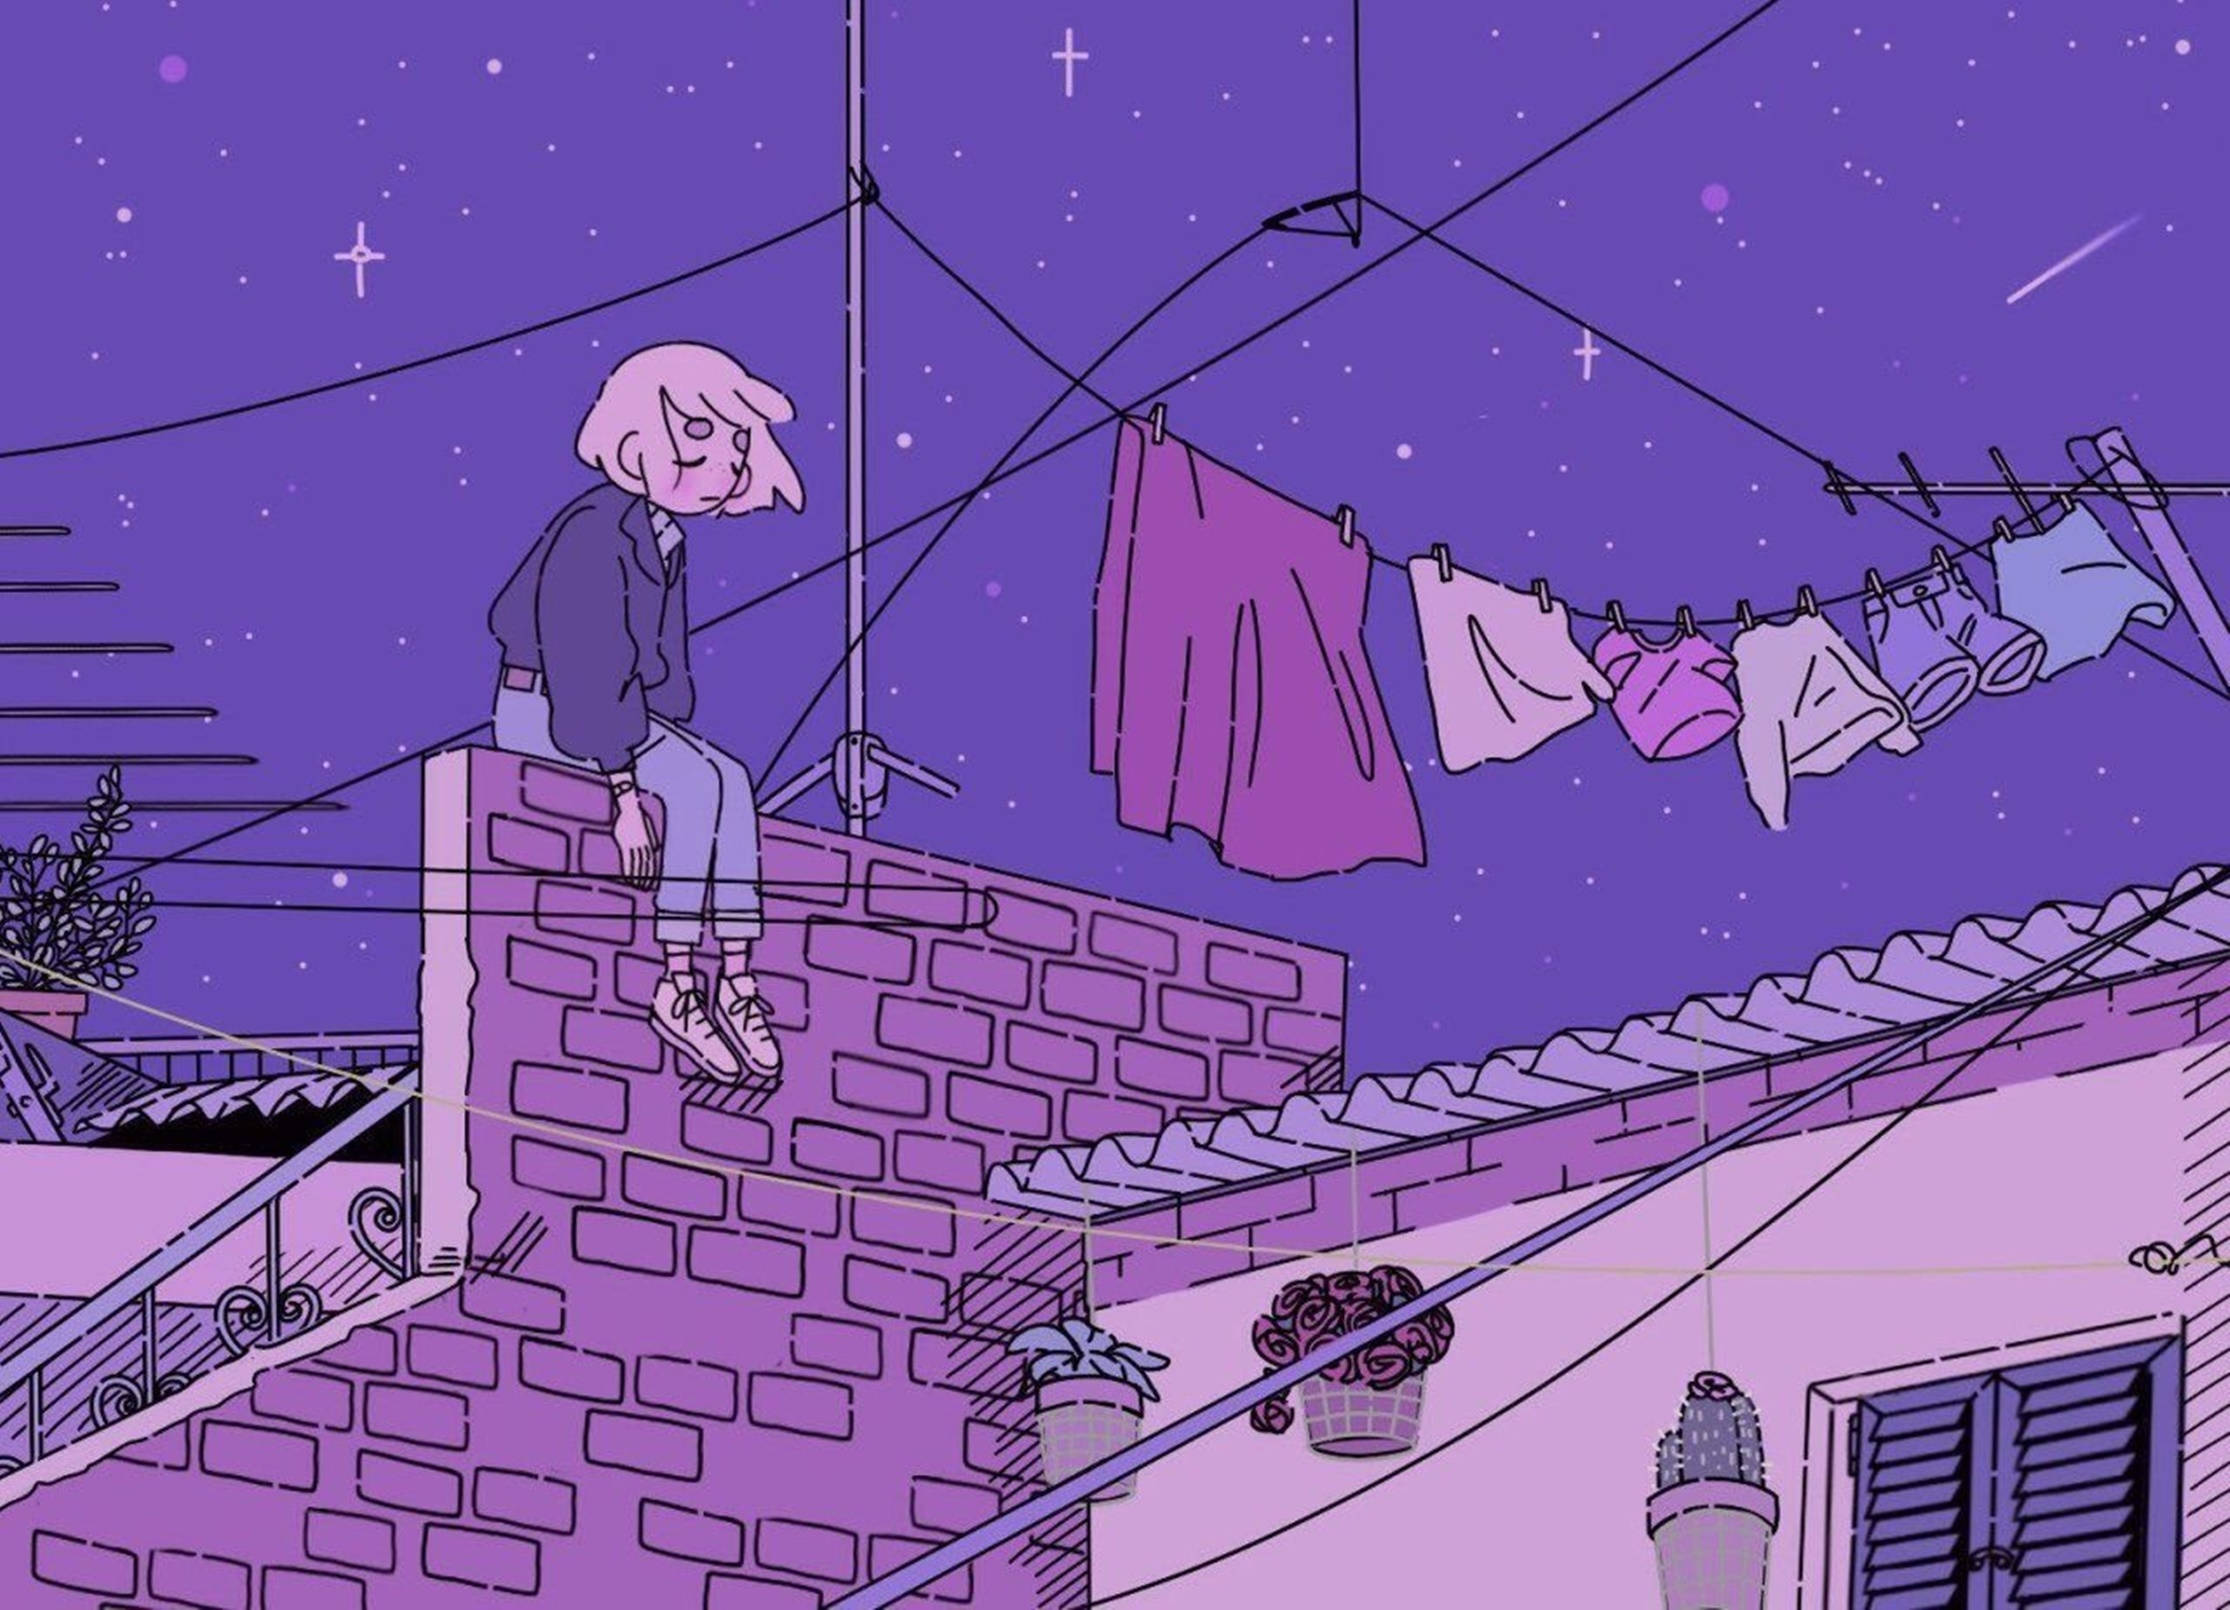 Lo Fi Anime Girl Over Purple Sky